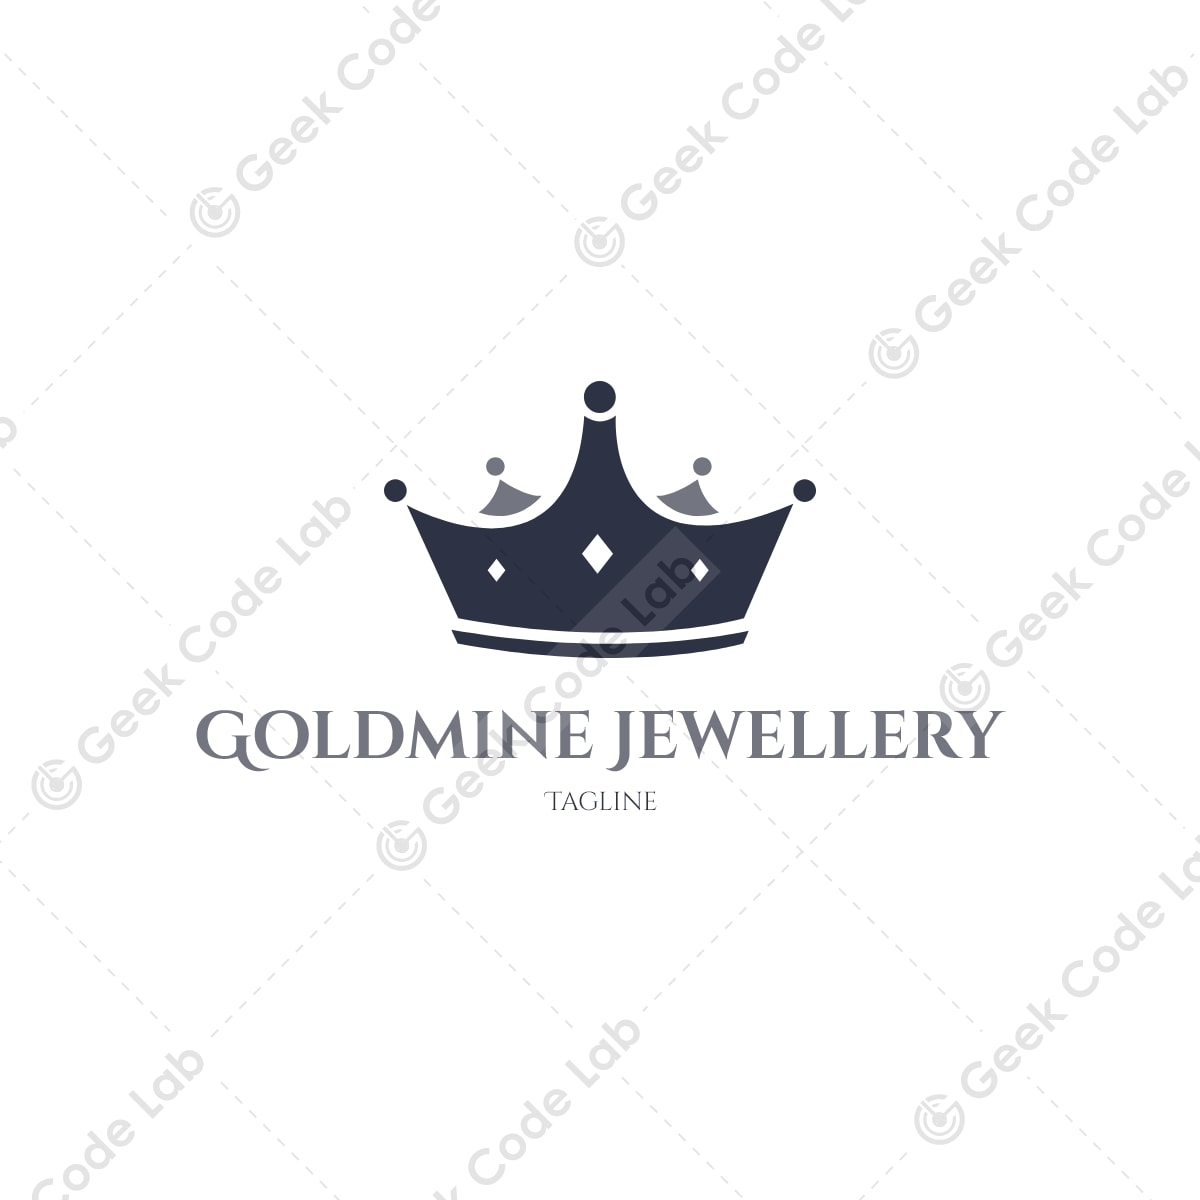 Goldmine Jewellery